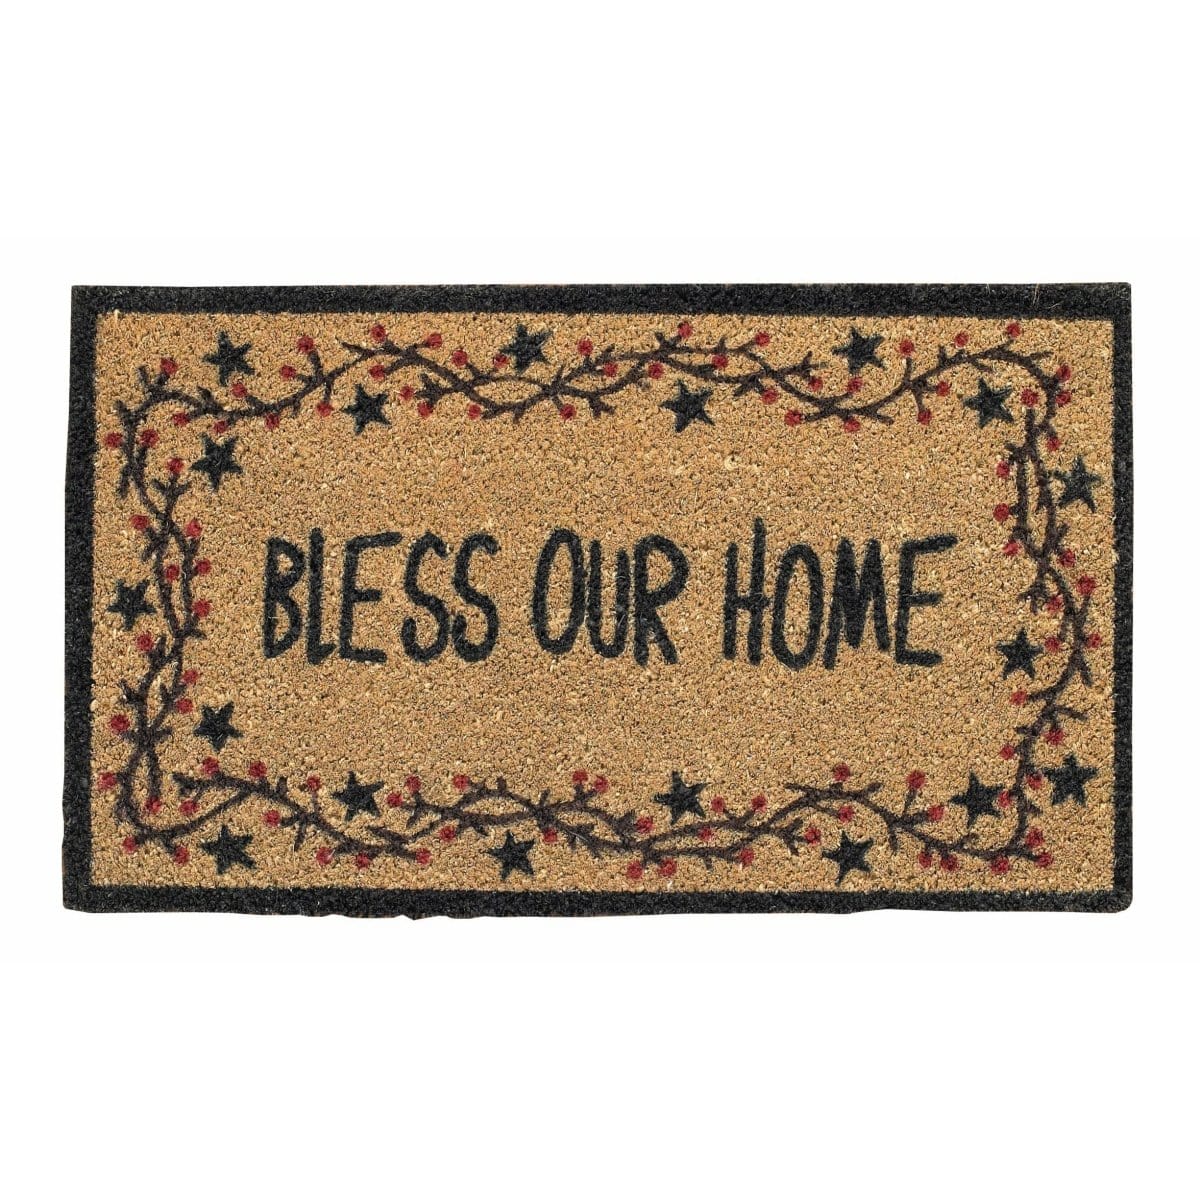 Star Vine Bless Our Home Coir Doormat-Park Designs-The Village Merchant